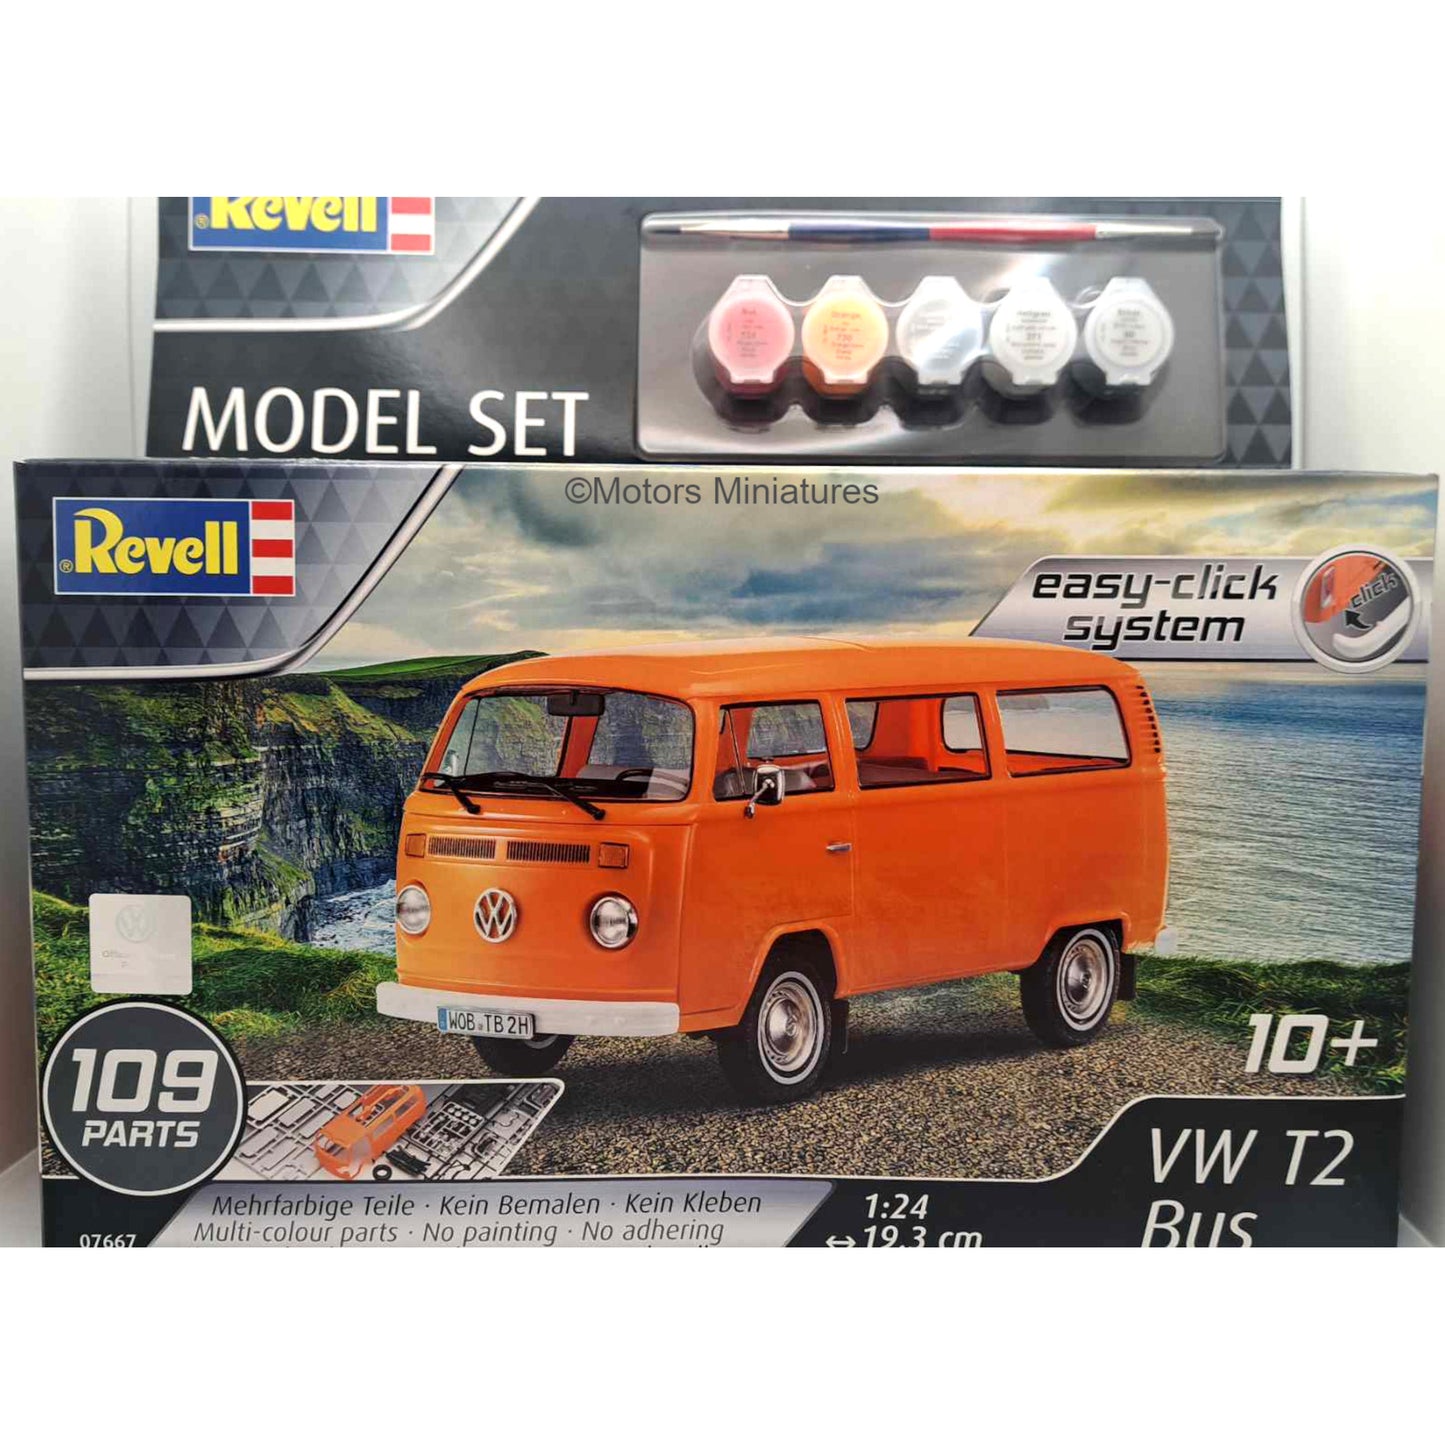 Volkswagen T2 BUS Modelkit Easy Click Revell 1/24 | Motors Miniatures